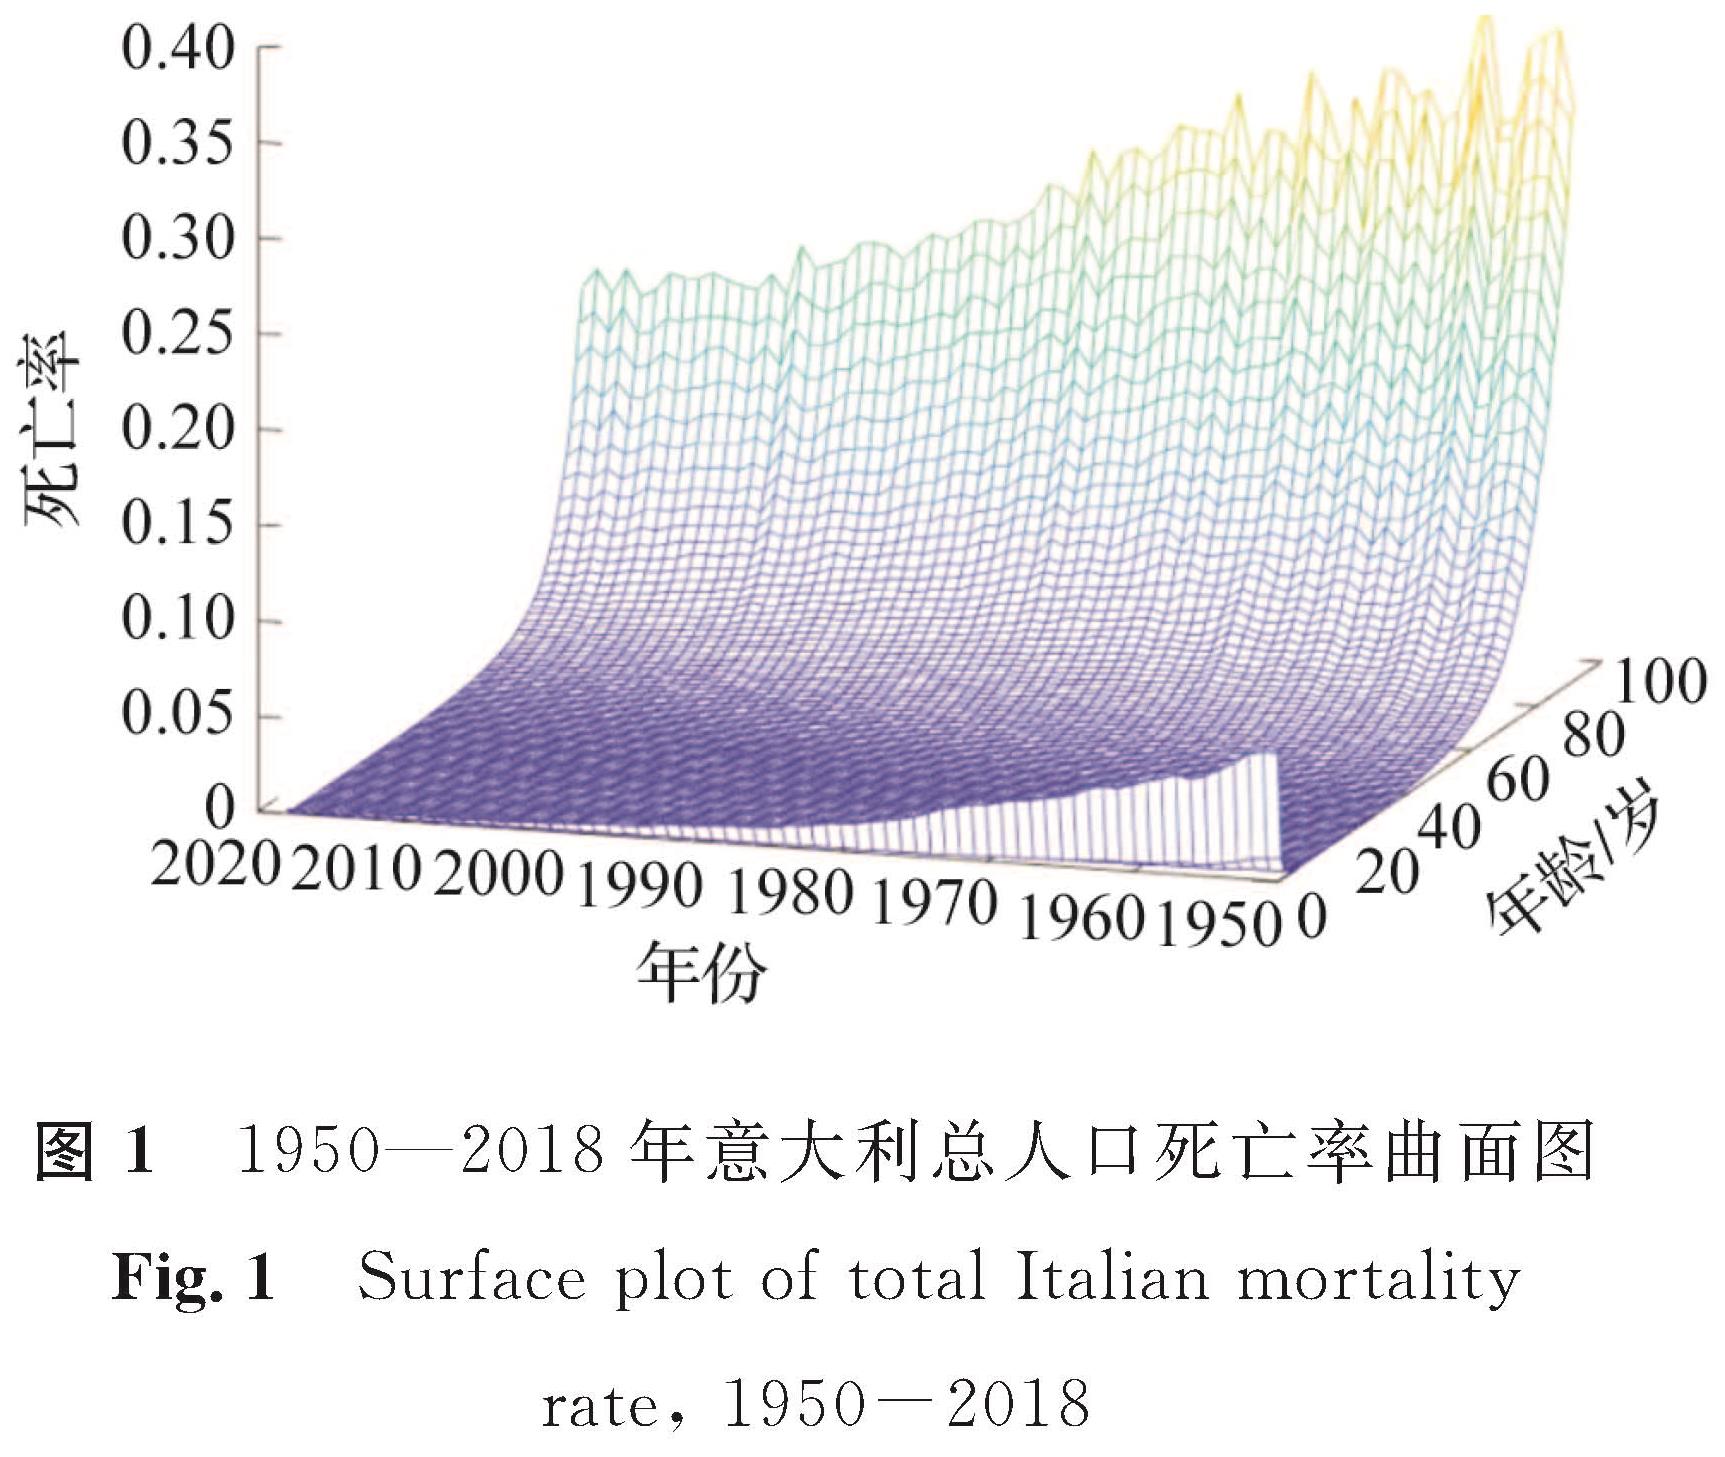 图1 1950—2018年意大利总人口死亡率曲面图<br/>Fig.1 Surface plot of total Italian mortality rate, 1950-2018